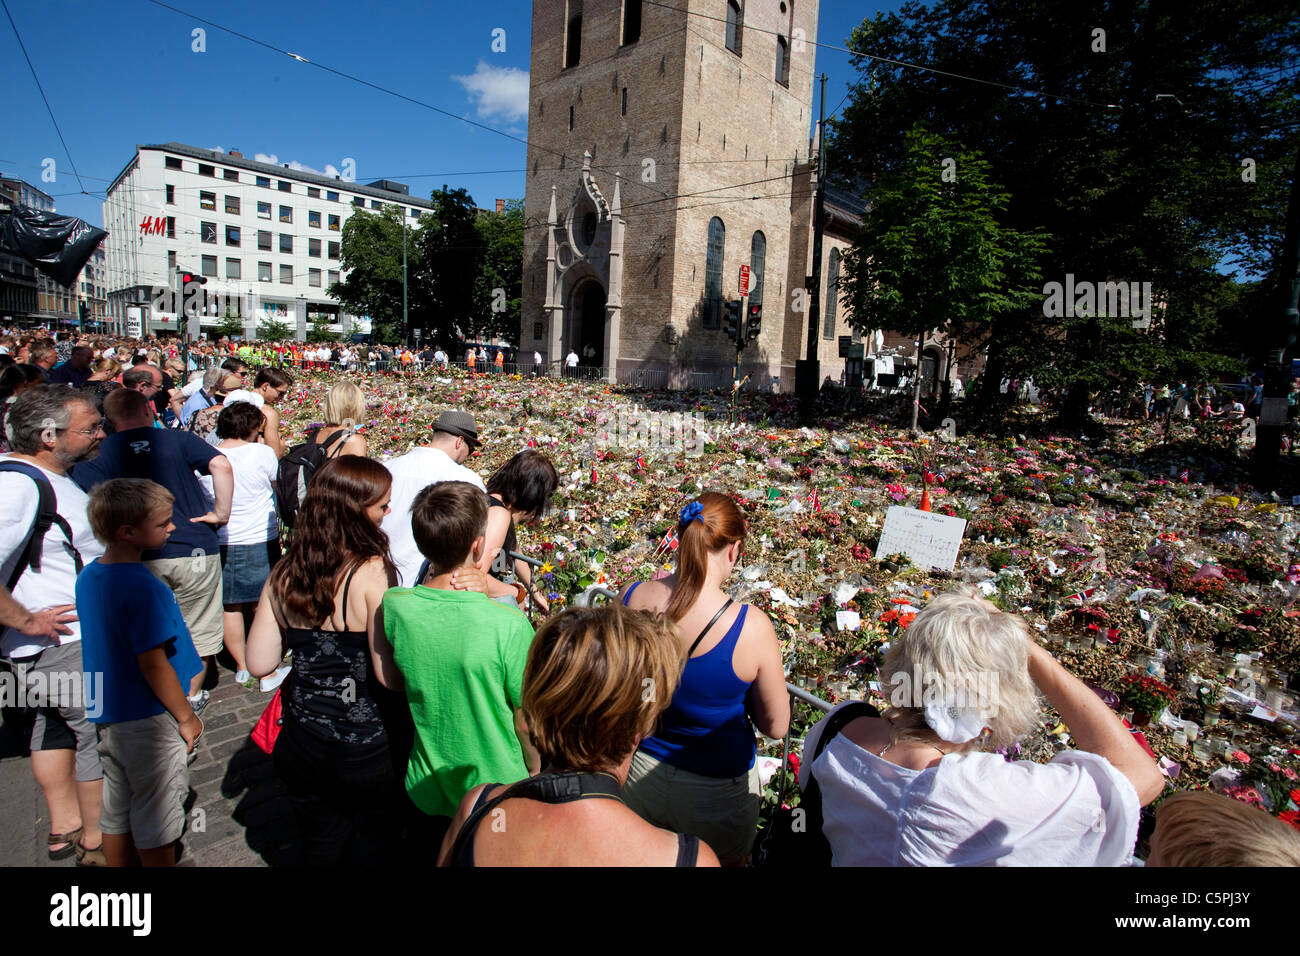 Popolo norvegese a un memoriale al di fuori dell'Oslo Domkirken dopo la peggiore del dopoguerra gli attacchi di terrore in Norvegia.Foto:Jeff Gilbert Foto Stock